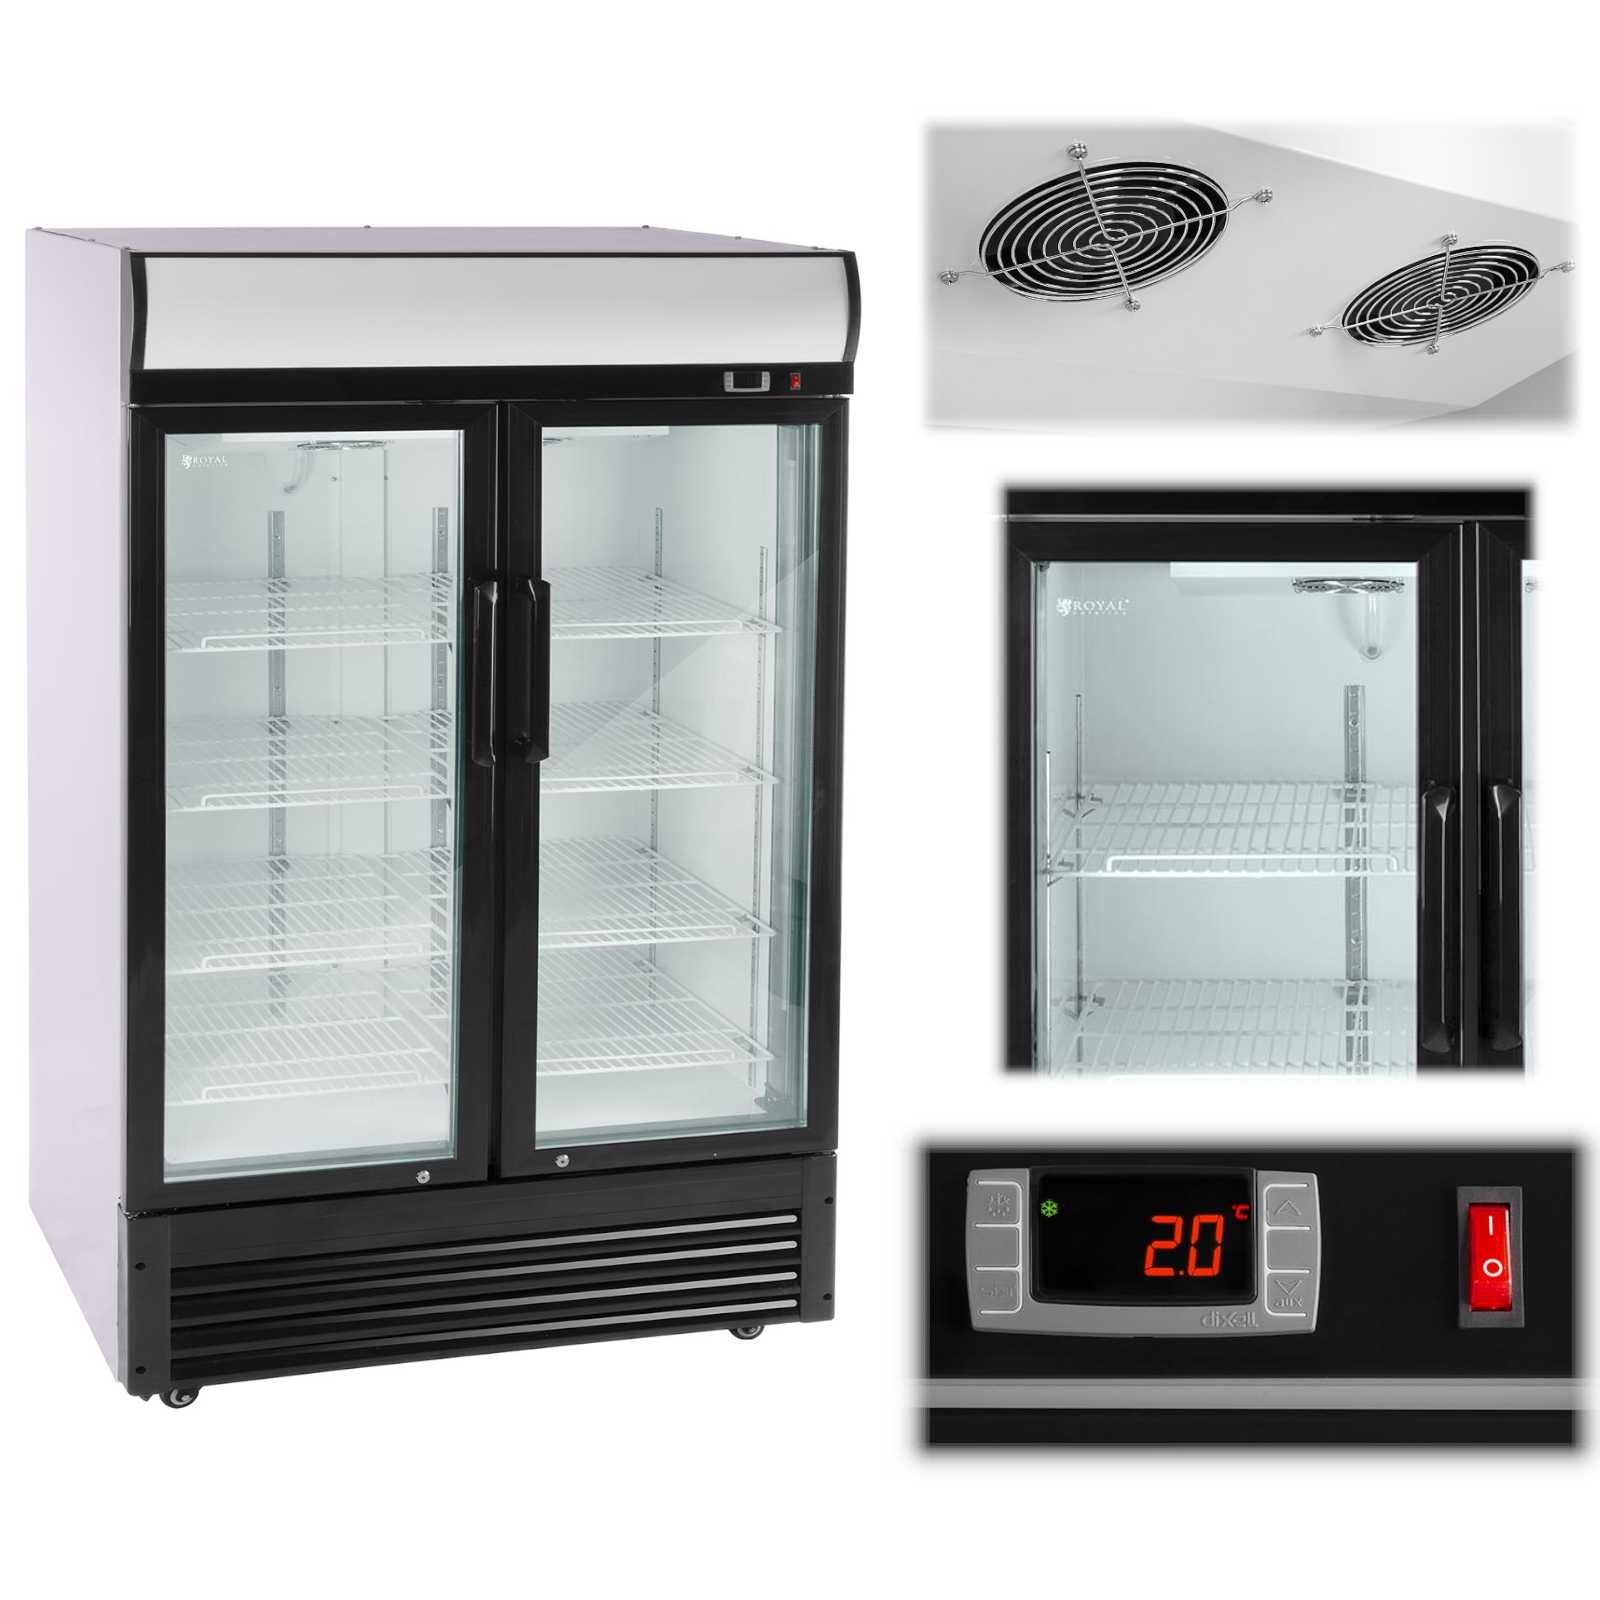 Вентиляционный холодильник. Холодильный шкаф для напитков. Вентиляция для холодильника. Холодильный шкаф двойной стеклянный. SC-339 Haier холодильник витринный.